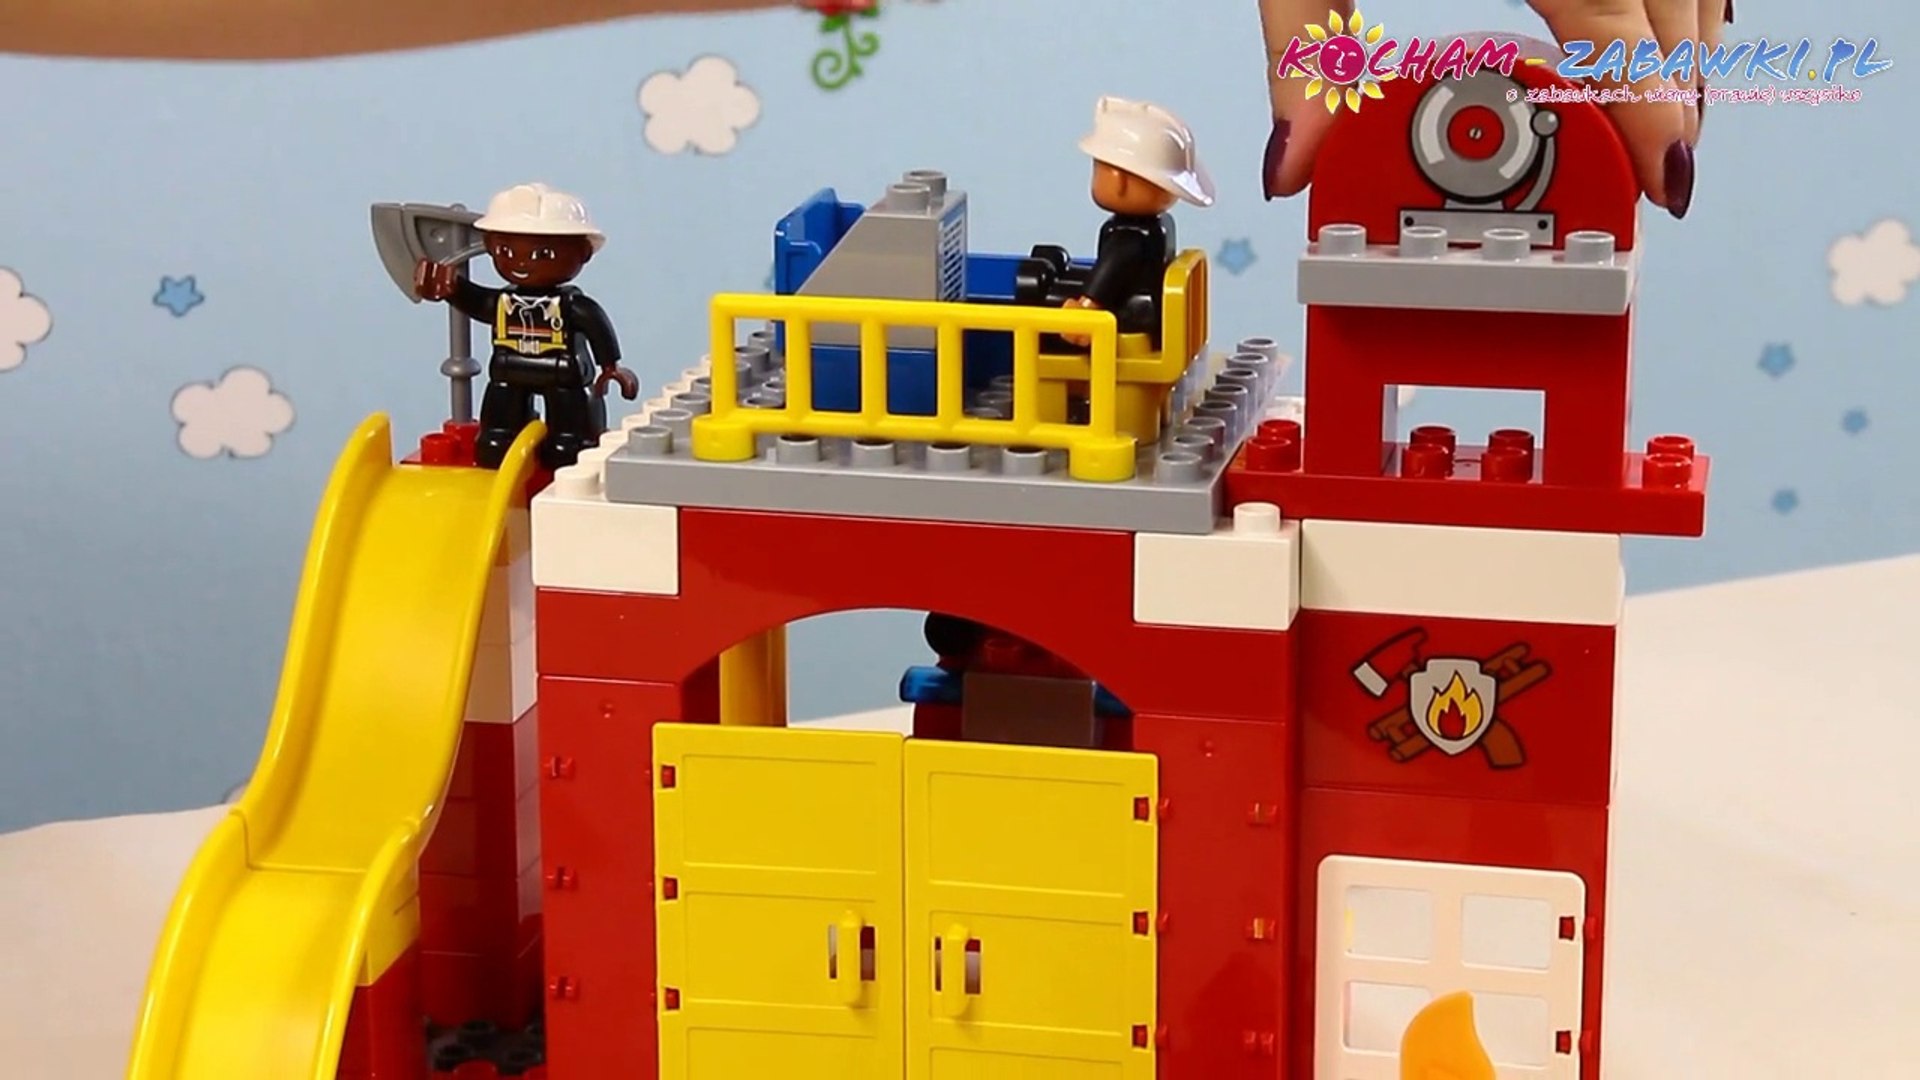 Fire Station / Remiza Strażacka 6168 - Lego Duplo - Recenzja - video  Dailymotion